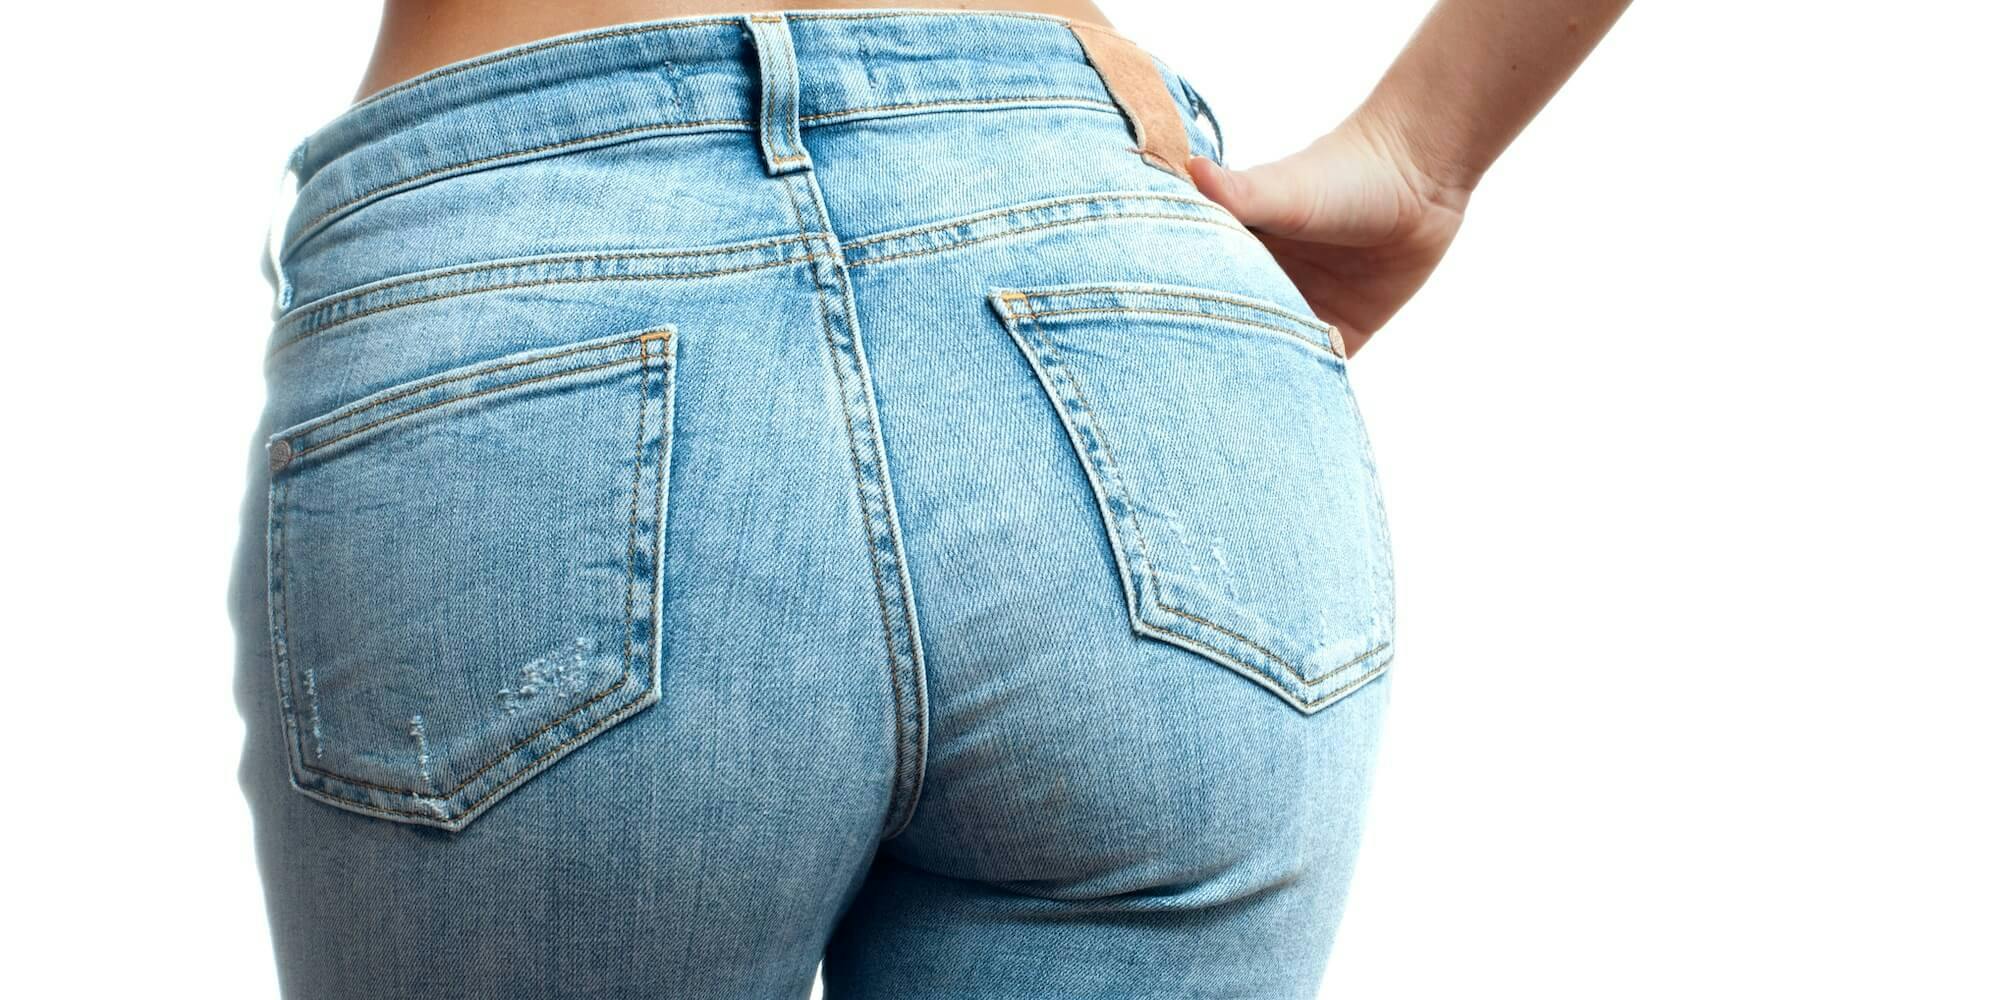 Овальная попа в джинсах